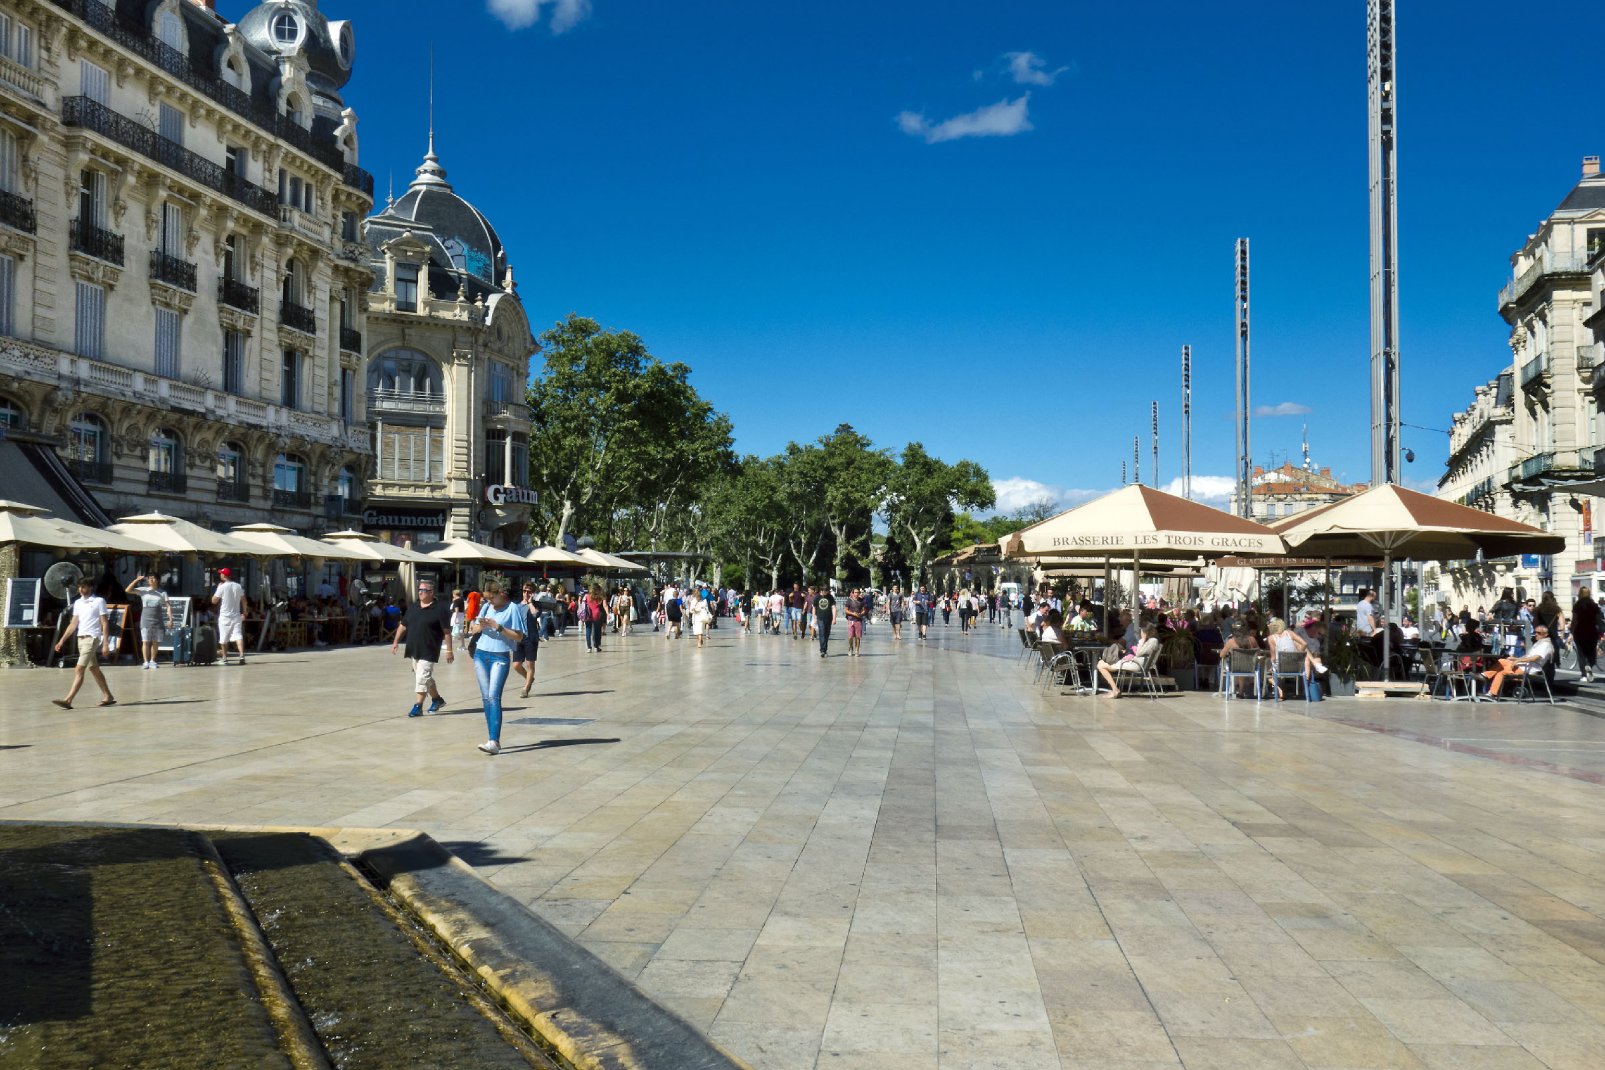 Décorée de fontaines et de platanes, l'esplanade Charles de Gaulle est un lieu où il fait bon flâner dans cette ville du sud.